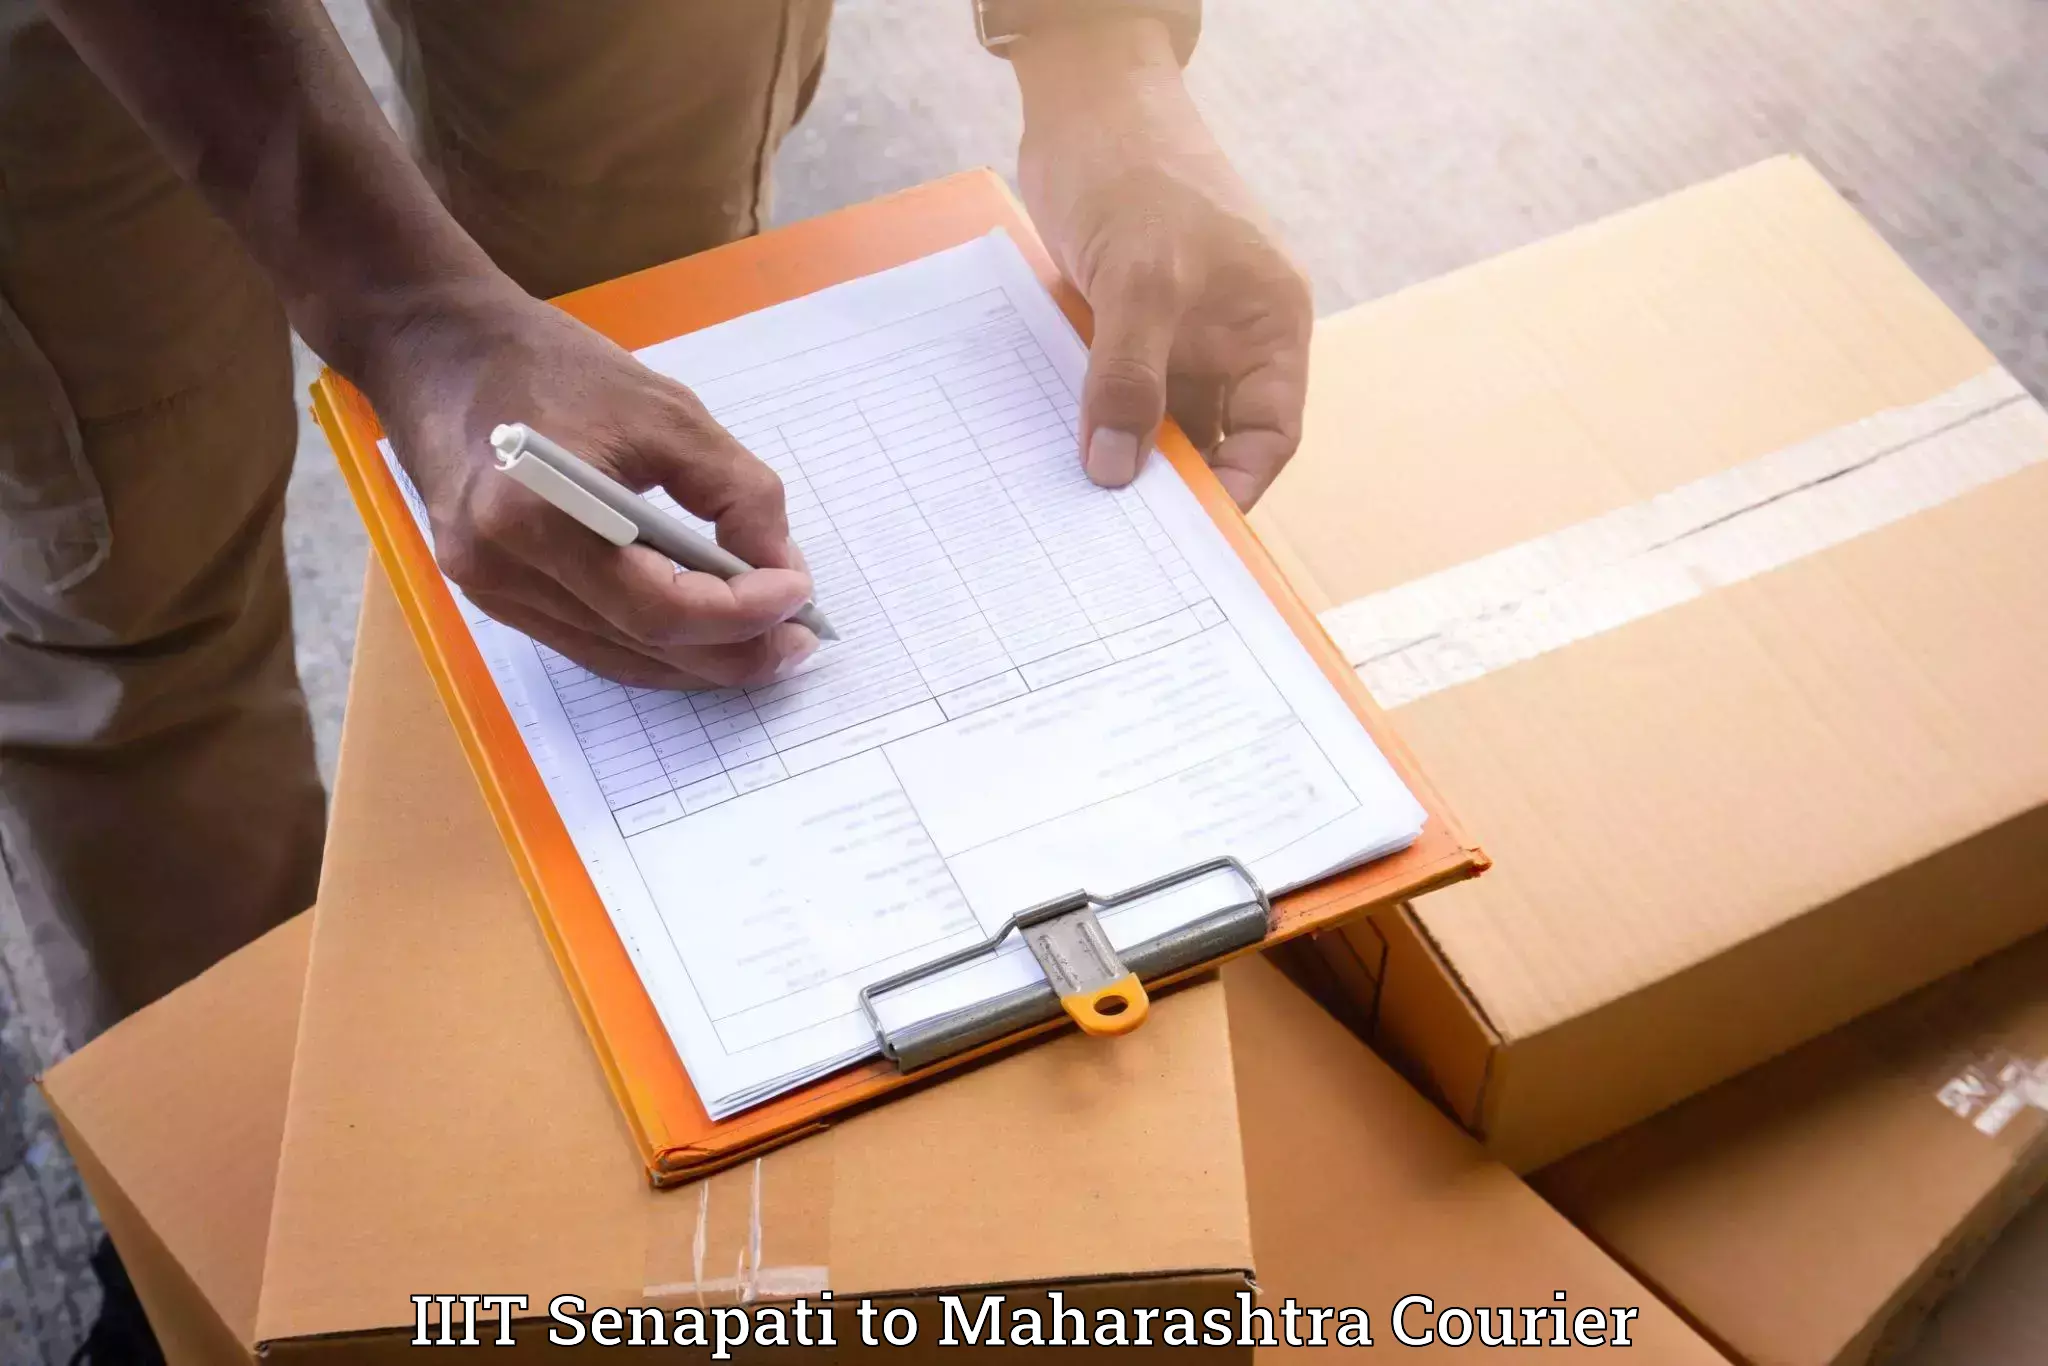 Furniture transport services IIIT Senapati to Deulgaon Raja